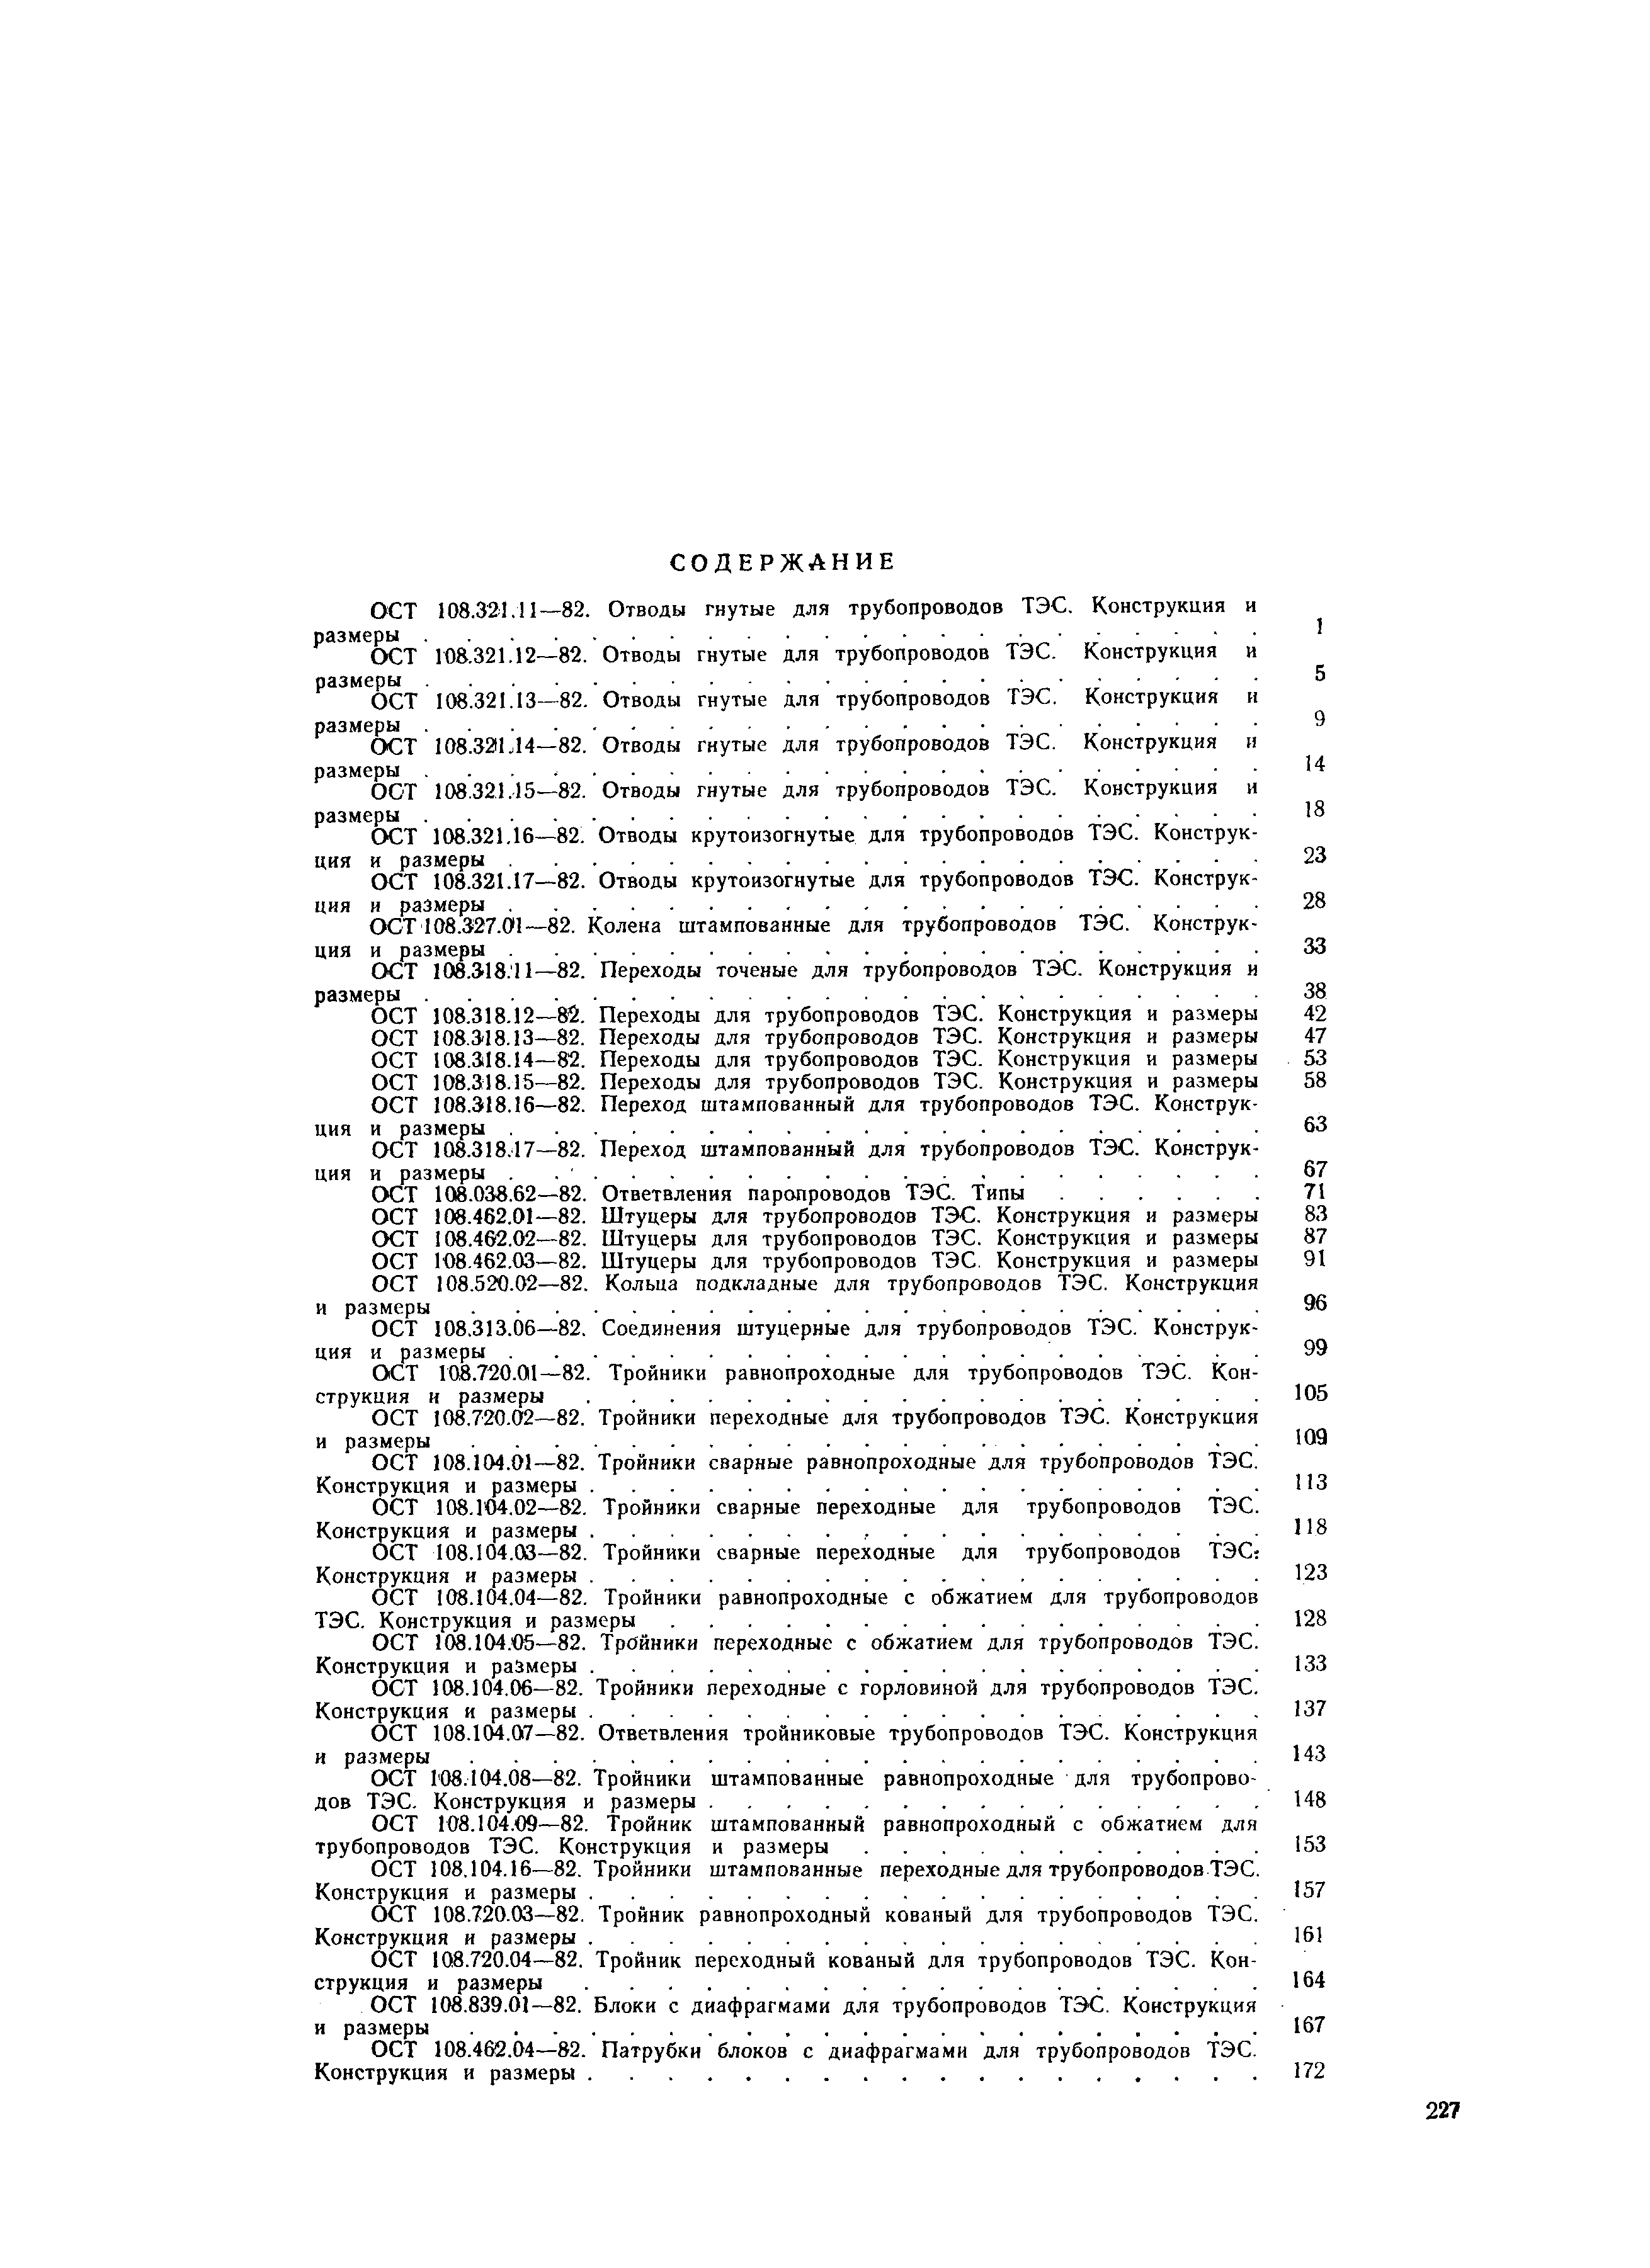 ОСТ 108.462.02-82